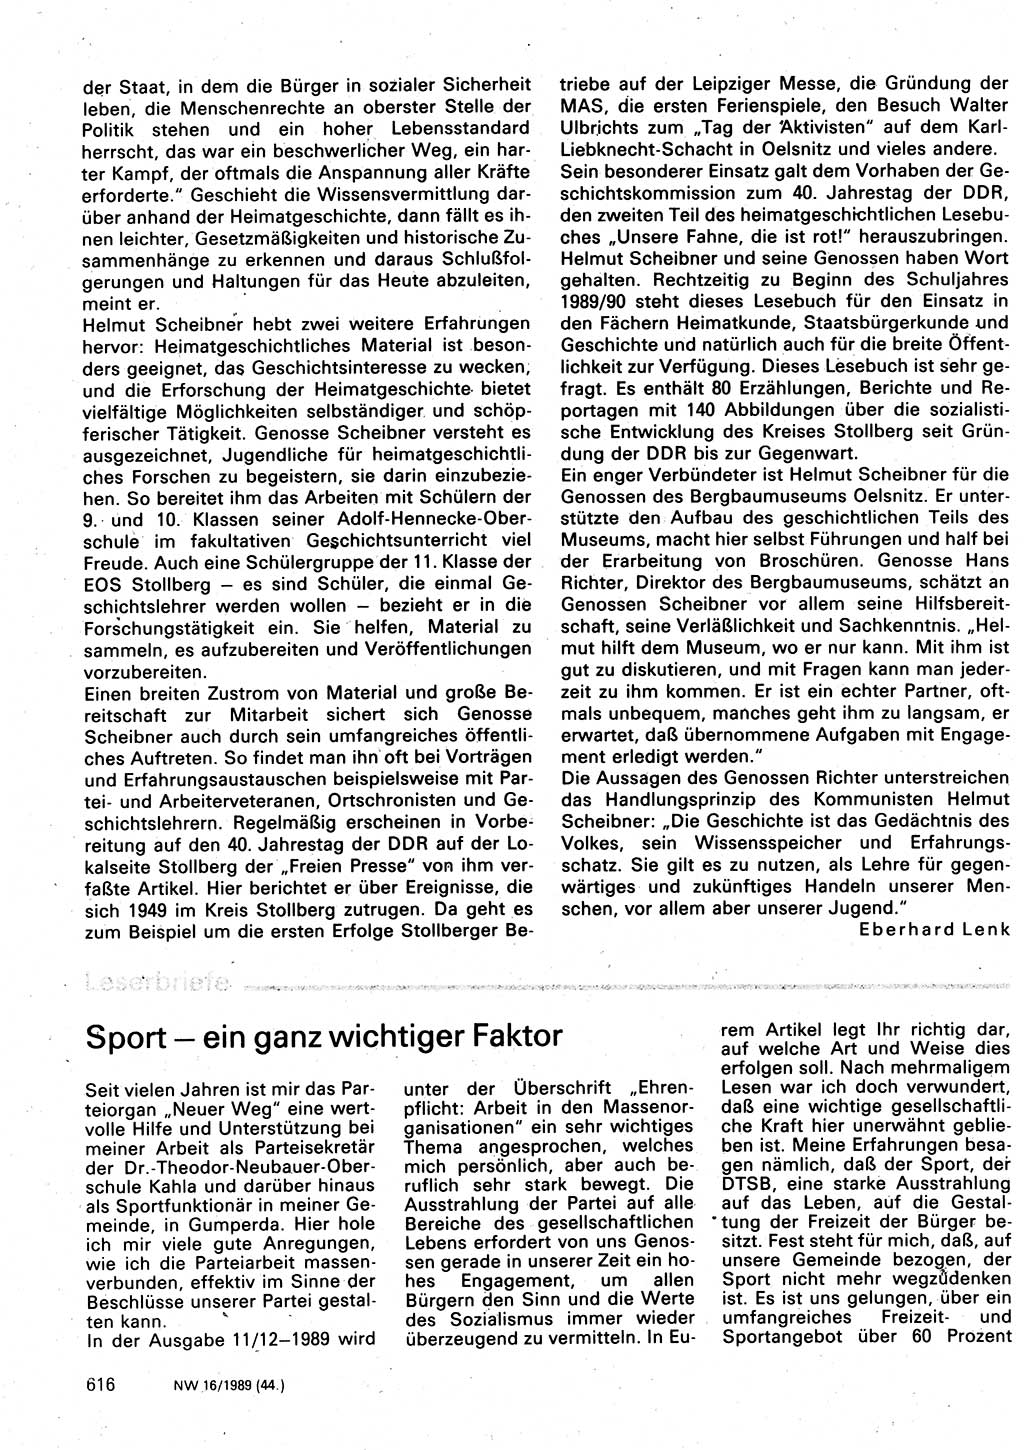 Neuer Weg (NW), Organ des Zentralkomitees (ZK) der SED (Sozialistische Einheitspartei Deutschlands) für Fragen des Parteilebens, 44. Jahrgang [Deutsche Demokratische Republik (DDR)] 1989, Seite 616 (NW ZK SED DDR 1989, S. 616)